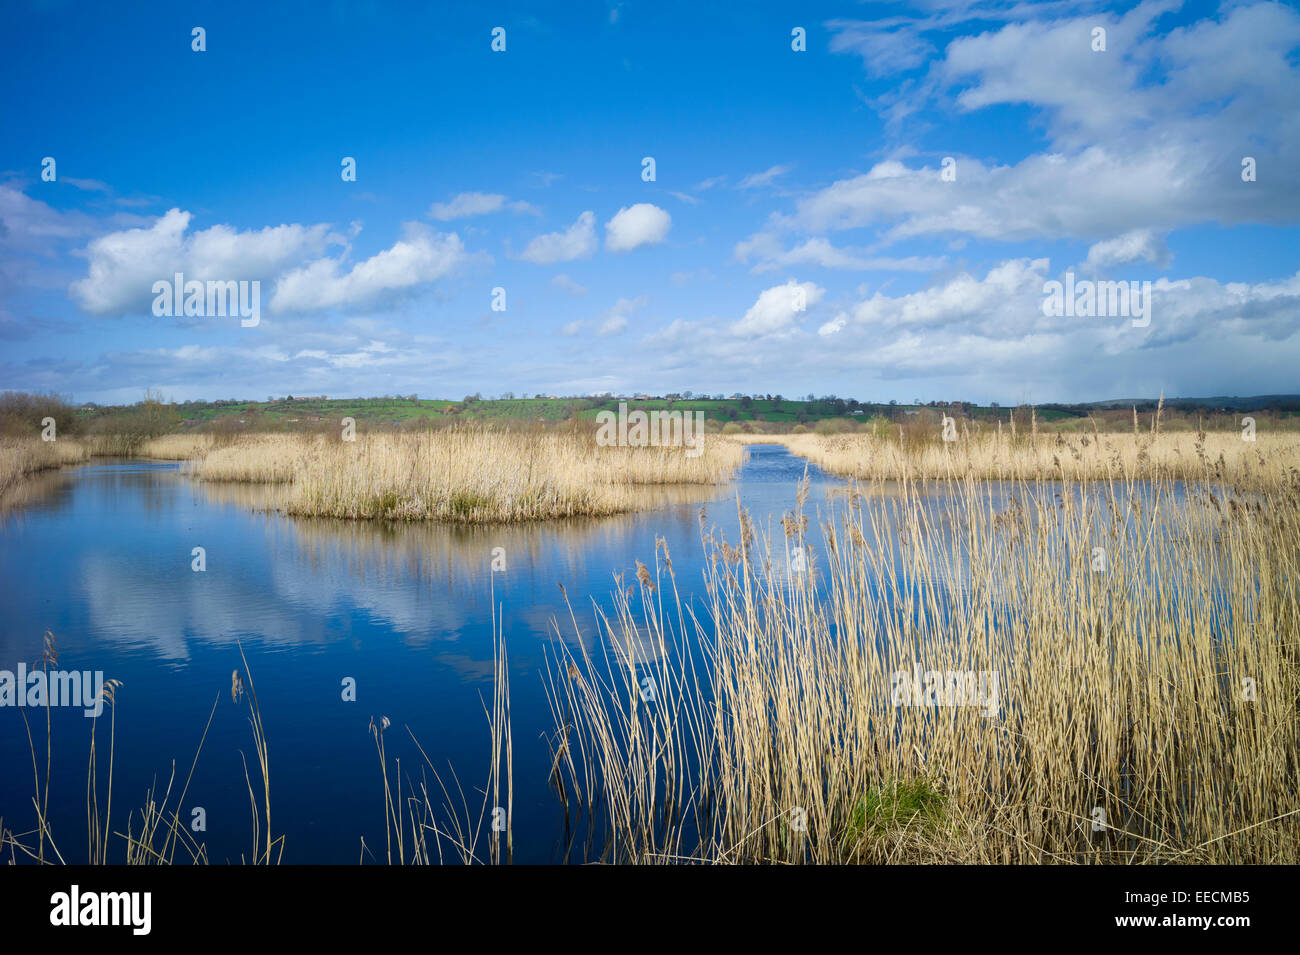 Les nuages gonflés comme reflet dans l'eau, roselière et les marais dans le Somerset Levels Réserve Naturelle dans le sud de l'Angleterre, Royaume-Uni Banque D'Images